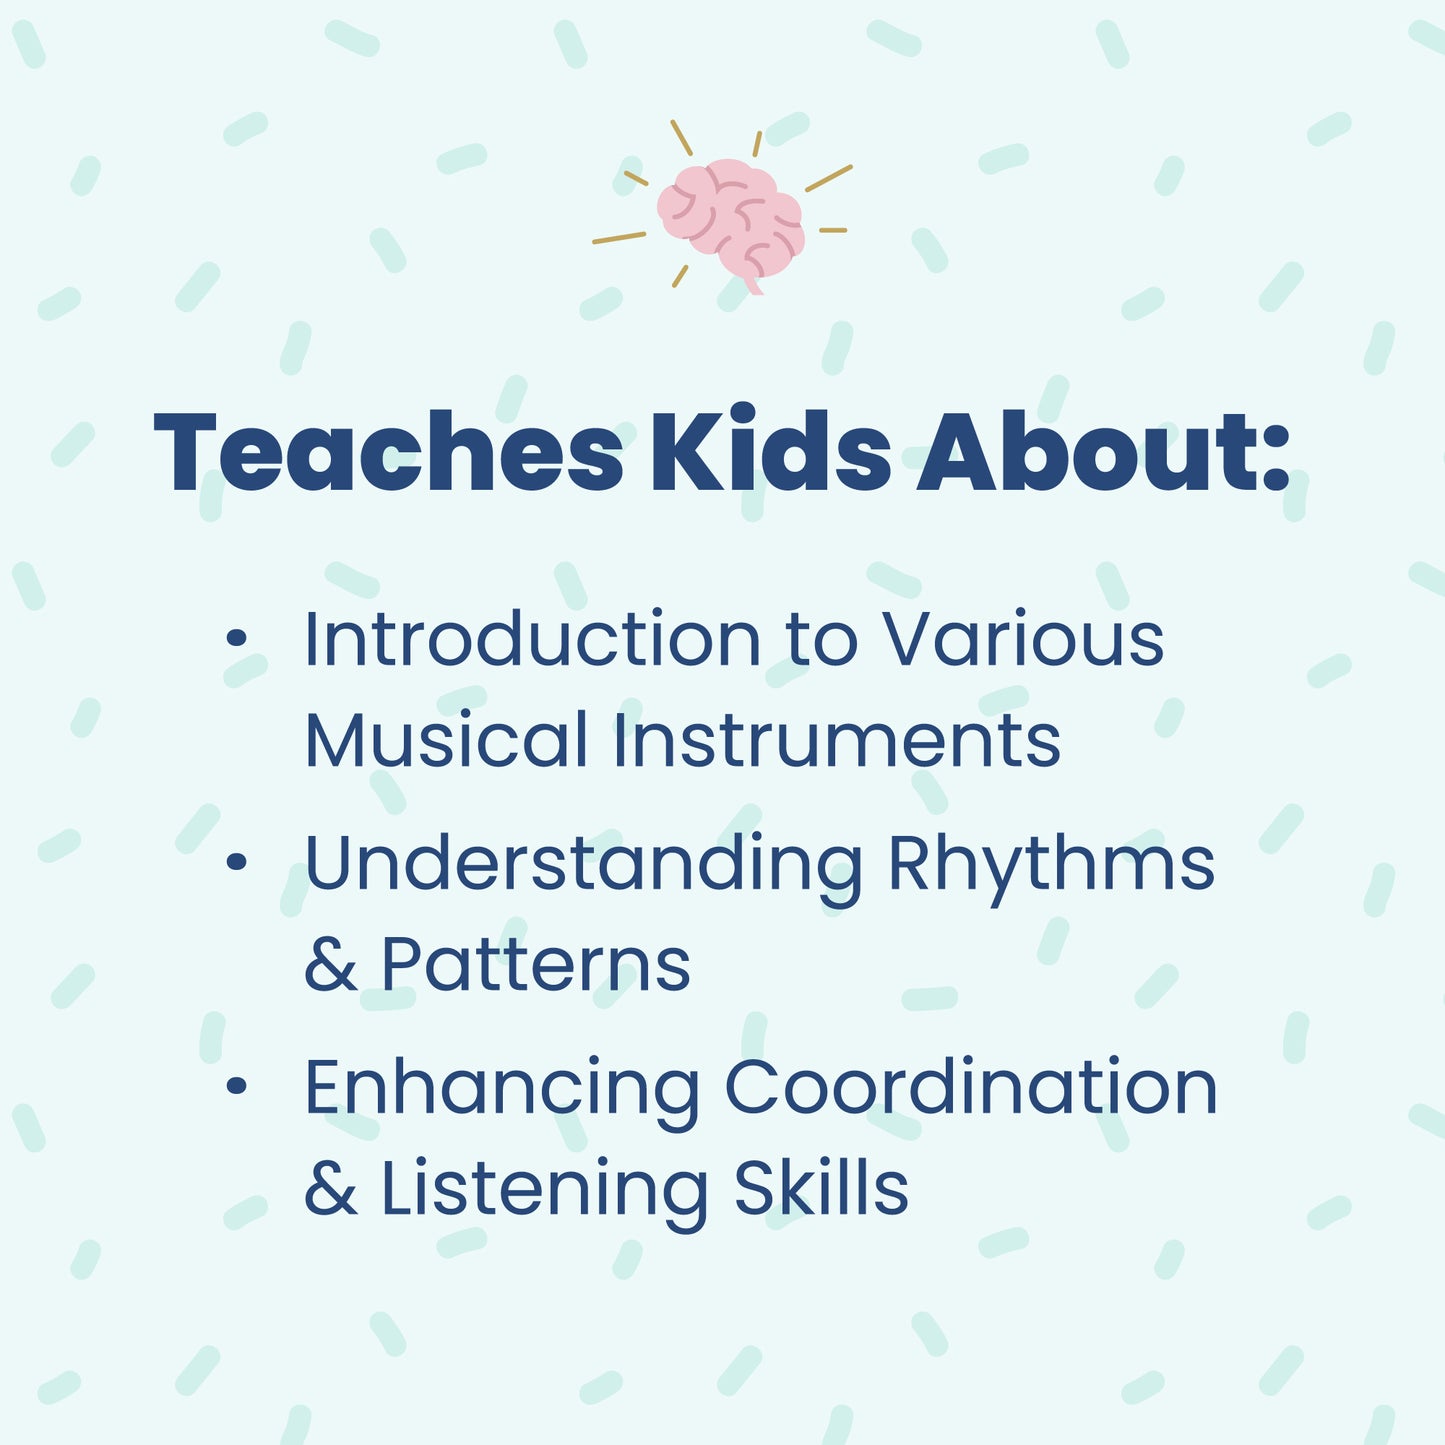 Songs for Teaching: Let's Make Music